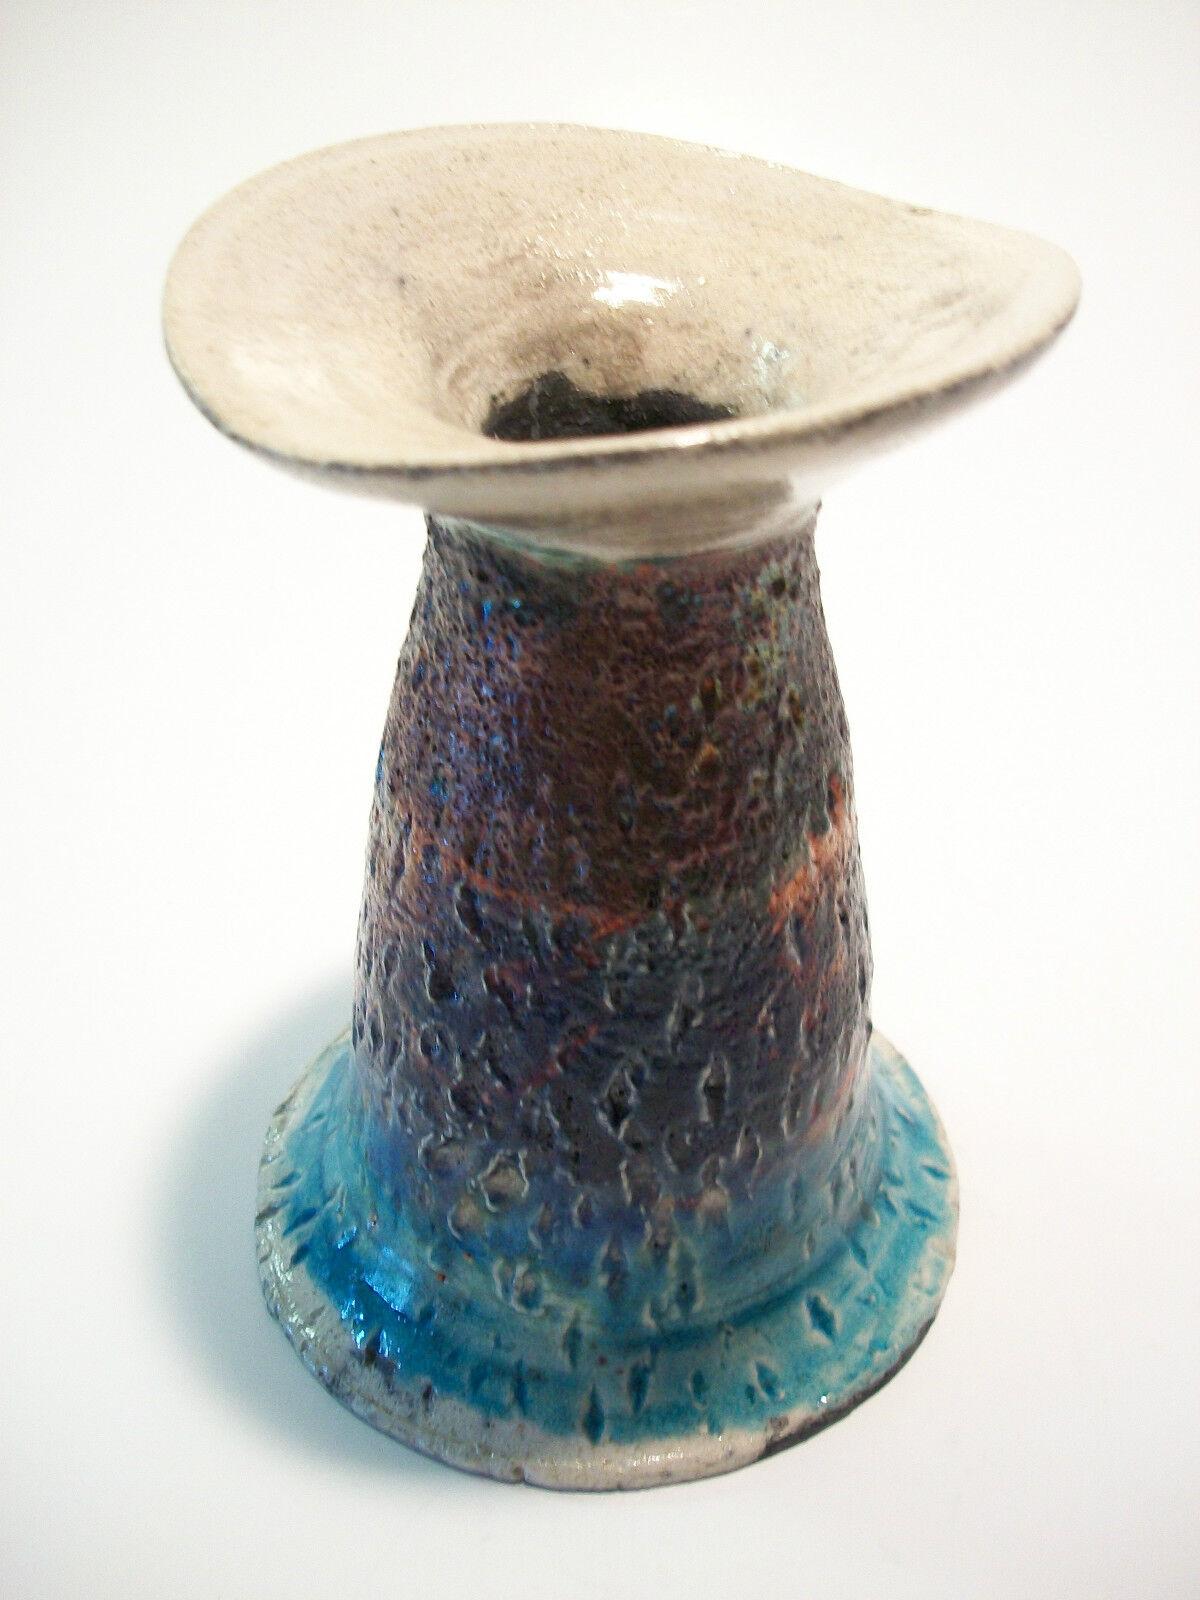 Vintage handgefertigte und mit Ritzungen verzierte Vase aus Raku Studio Keramik mit irisierender Glasur - signiert/initialisiert auf dem Sockel 'HK' - um 1970.

Ausgezeichneter Vintage-Zustand - kein Verlust - keine Beschädigung - keine